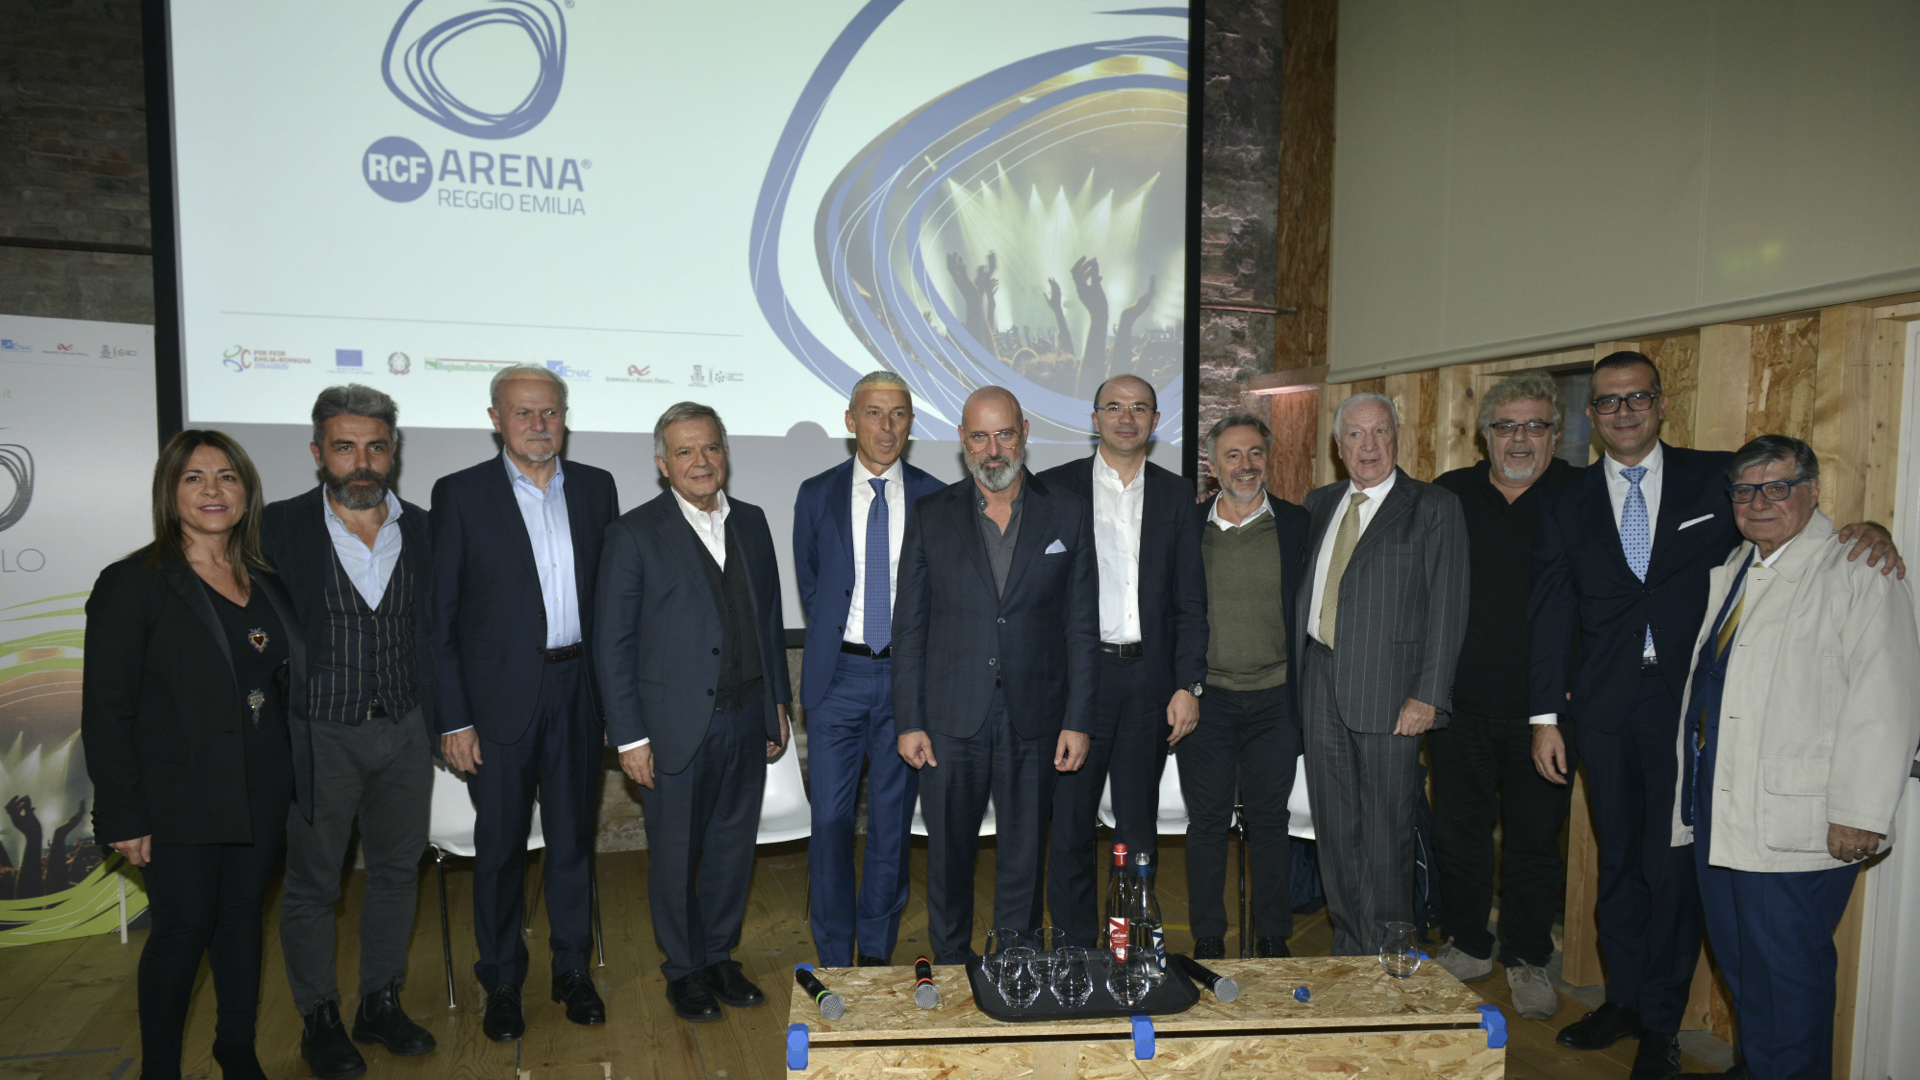 Unrivalled worldwide: RCF Arena opens in Reggio Emilia